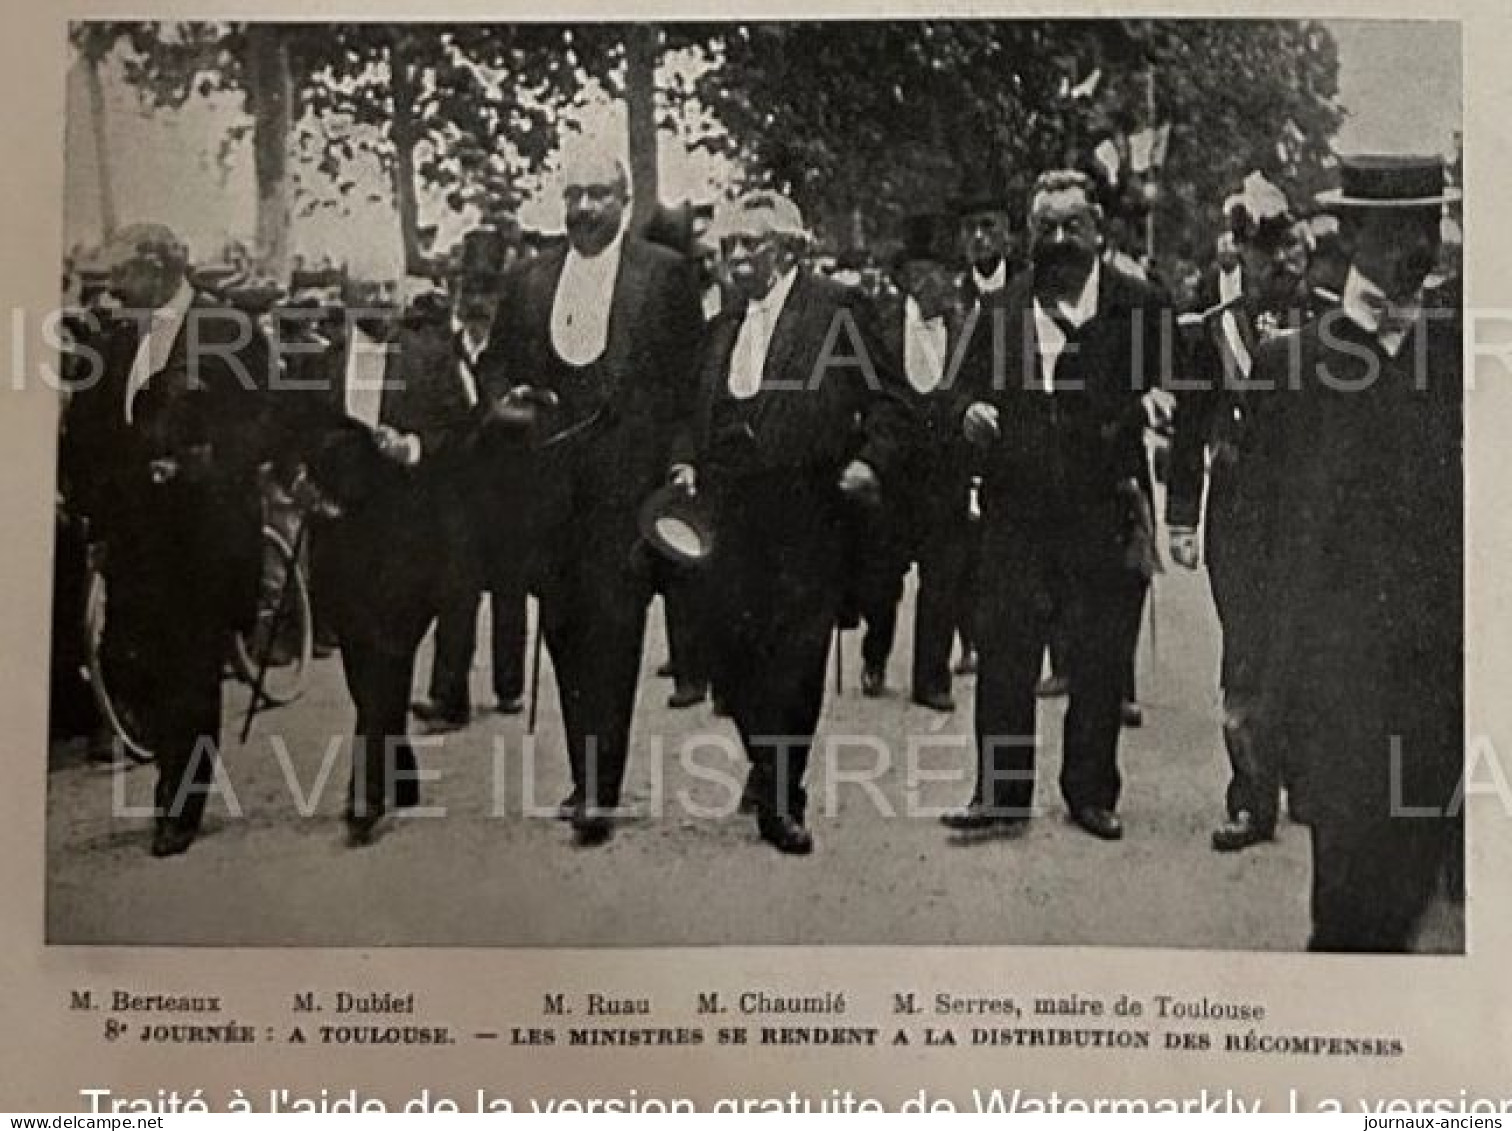 1905 COURSE AUTOMOBILE - LA COUPE DES PYRÉNÉES - PERPIGNAN - FOIX - LUCHON - CAUTERETS - BIARRITZ - TOULOUSE